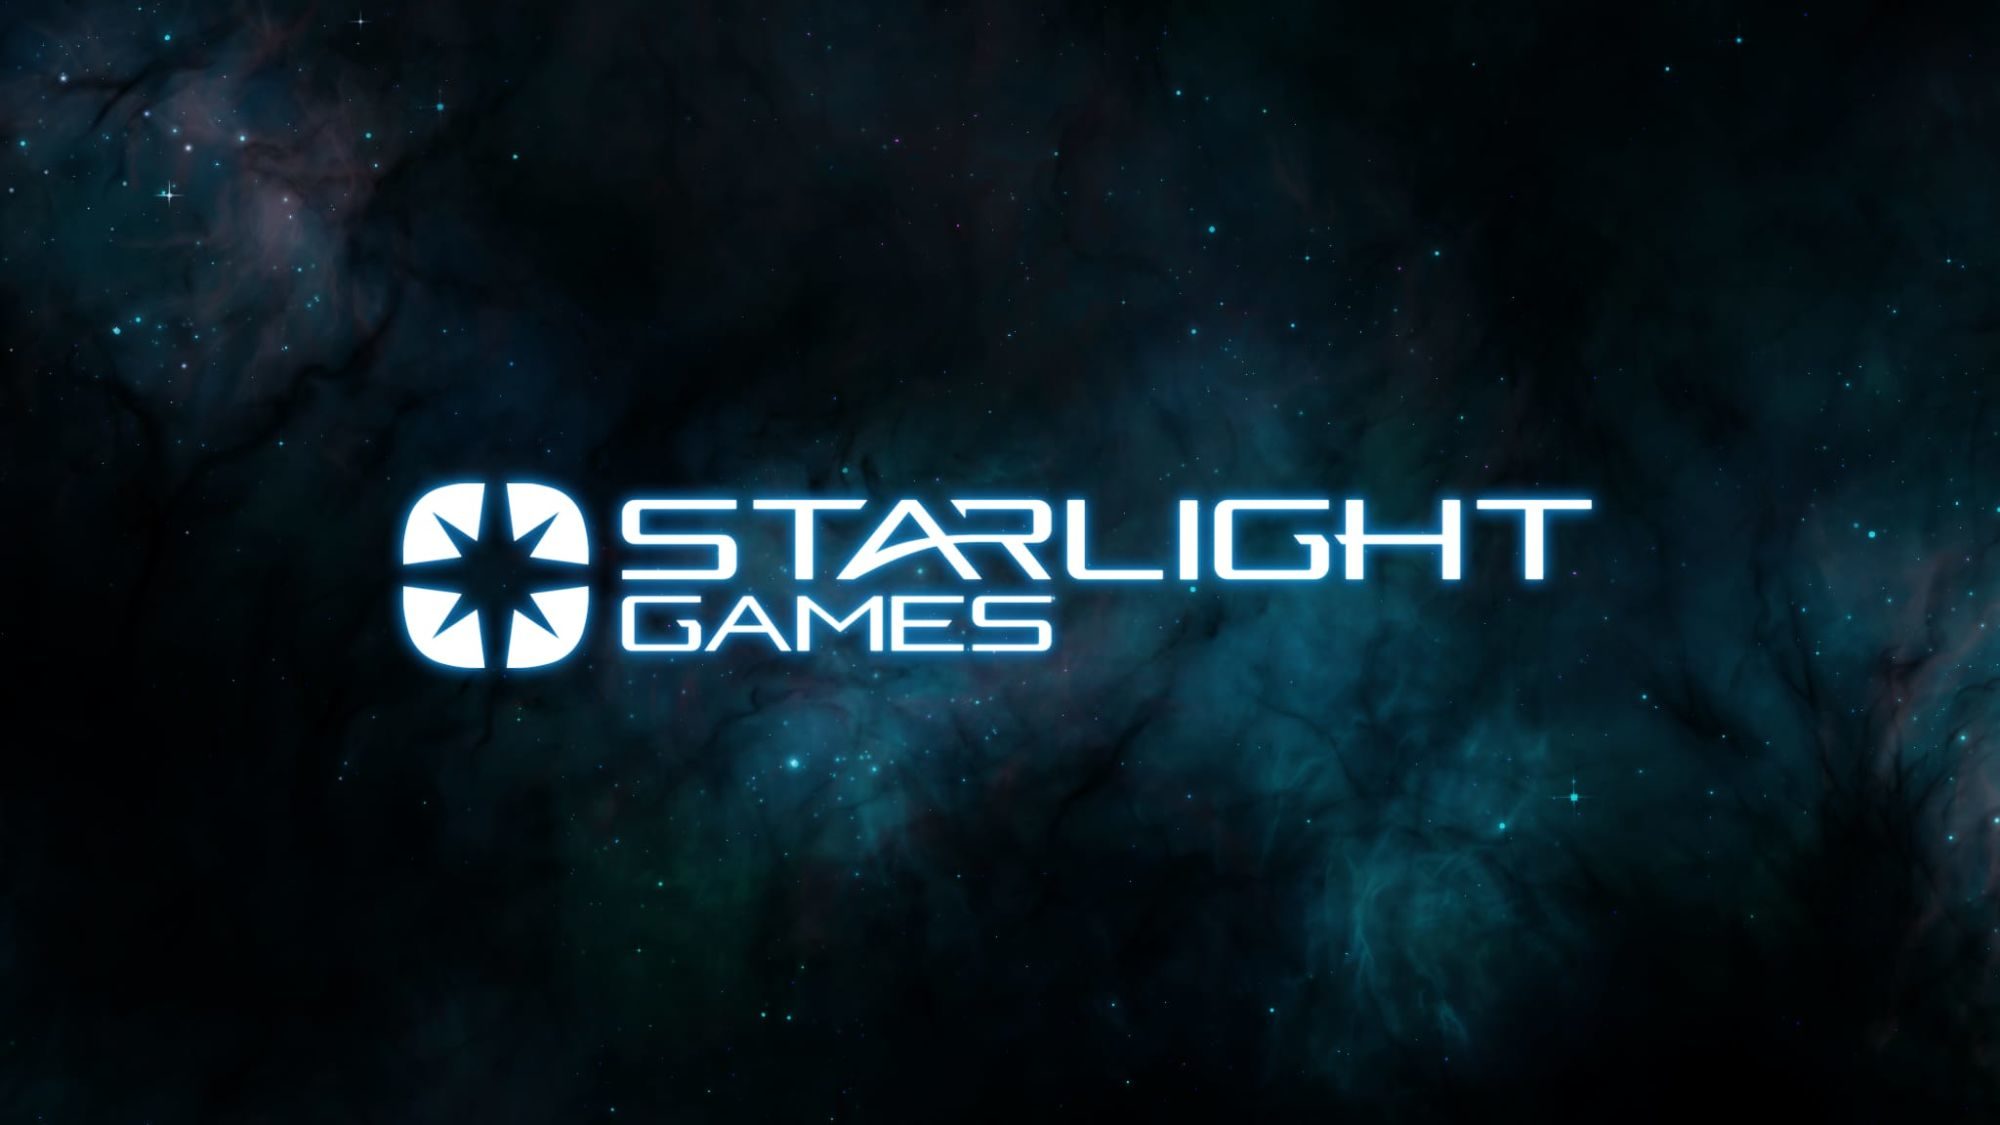 starlight games, estudio fundado por los creadores de wipeout, trabaja en un juego de acción de corte futurista con unreal engine 5